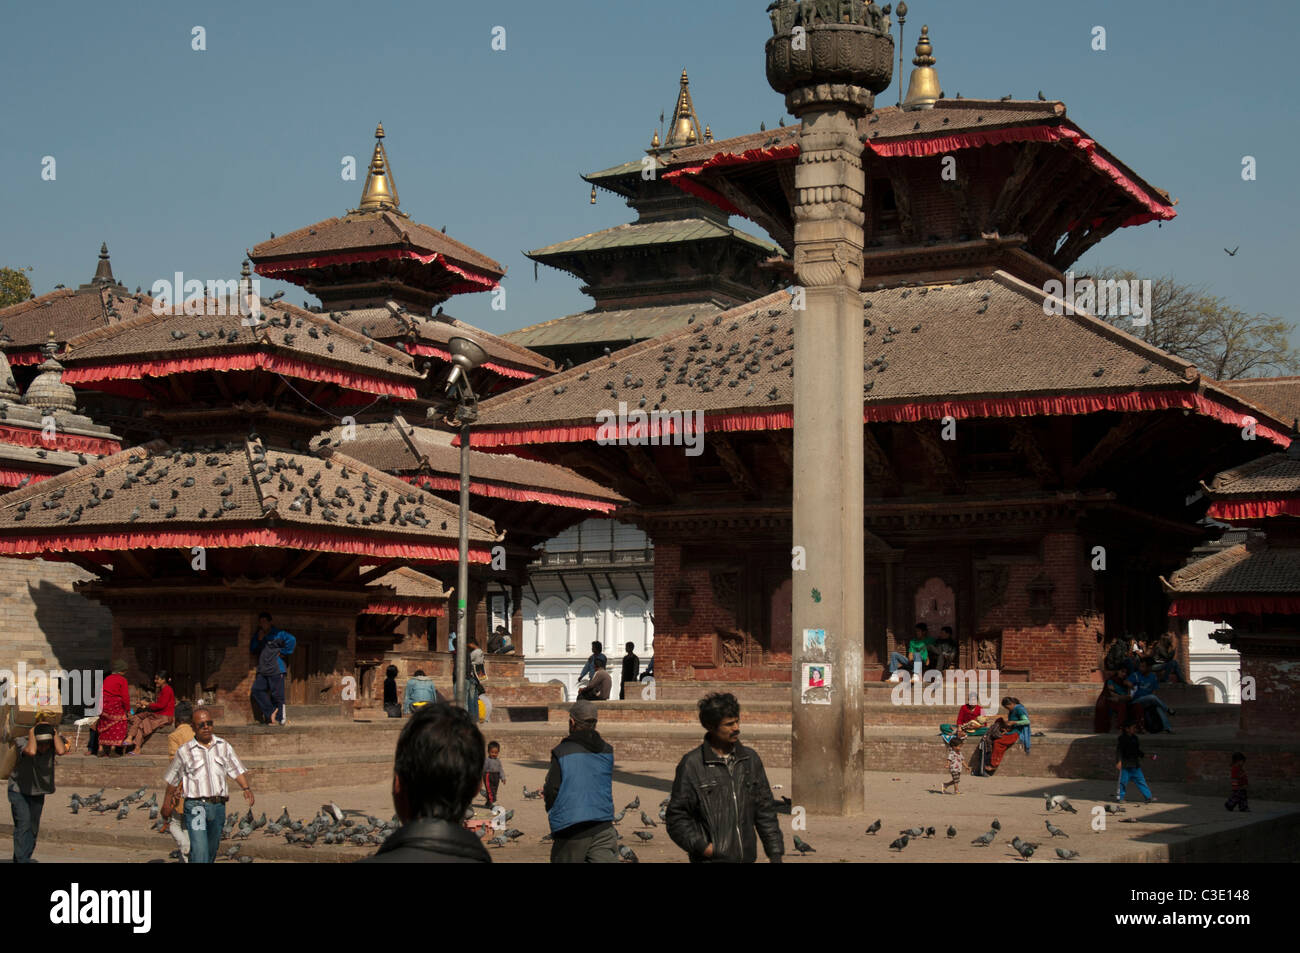 Pagodes de Durbar Square, Katmandou, Népal, avant le tremblement de terre catastrophique Avril 2015 Banque D'Images